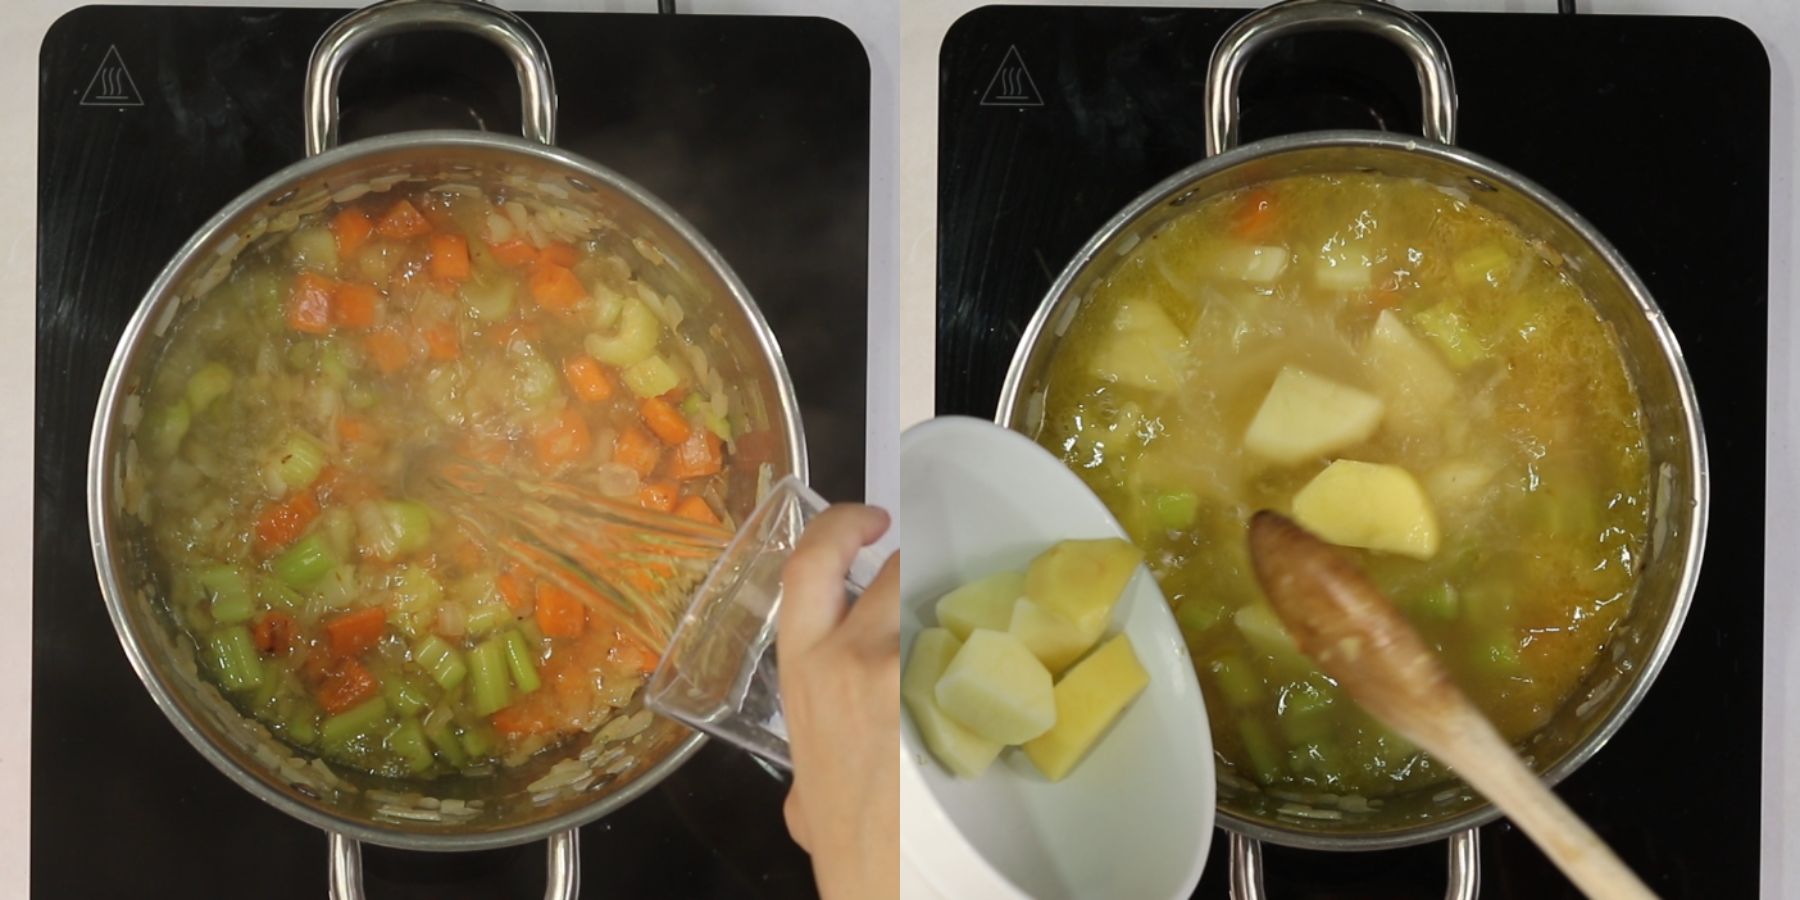 Soup process shots.